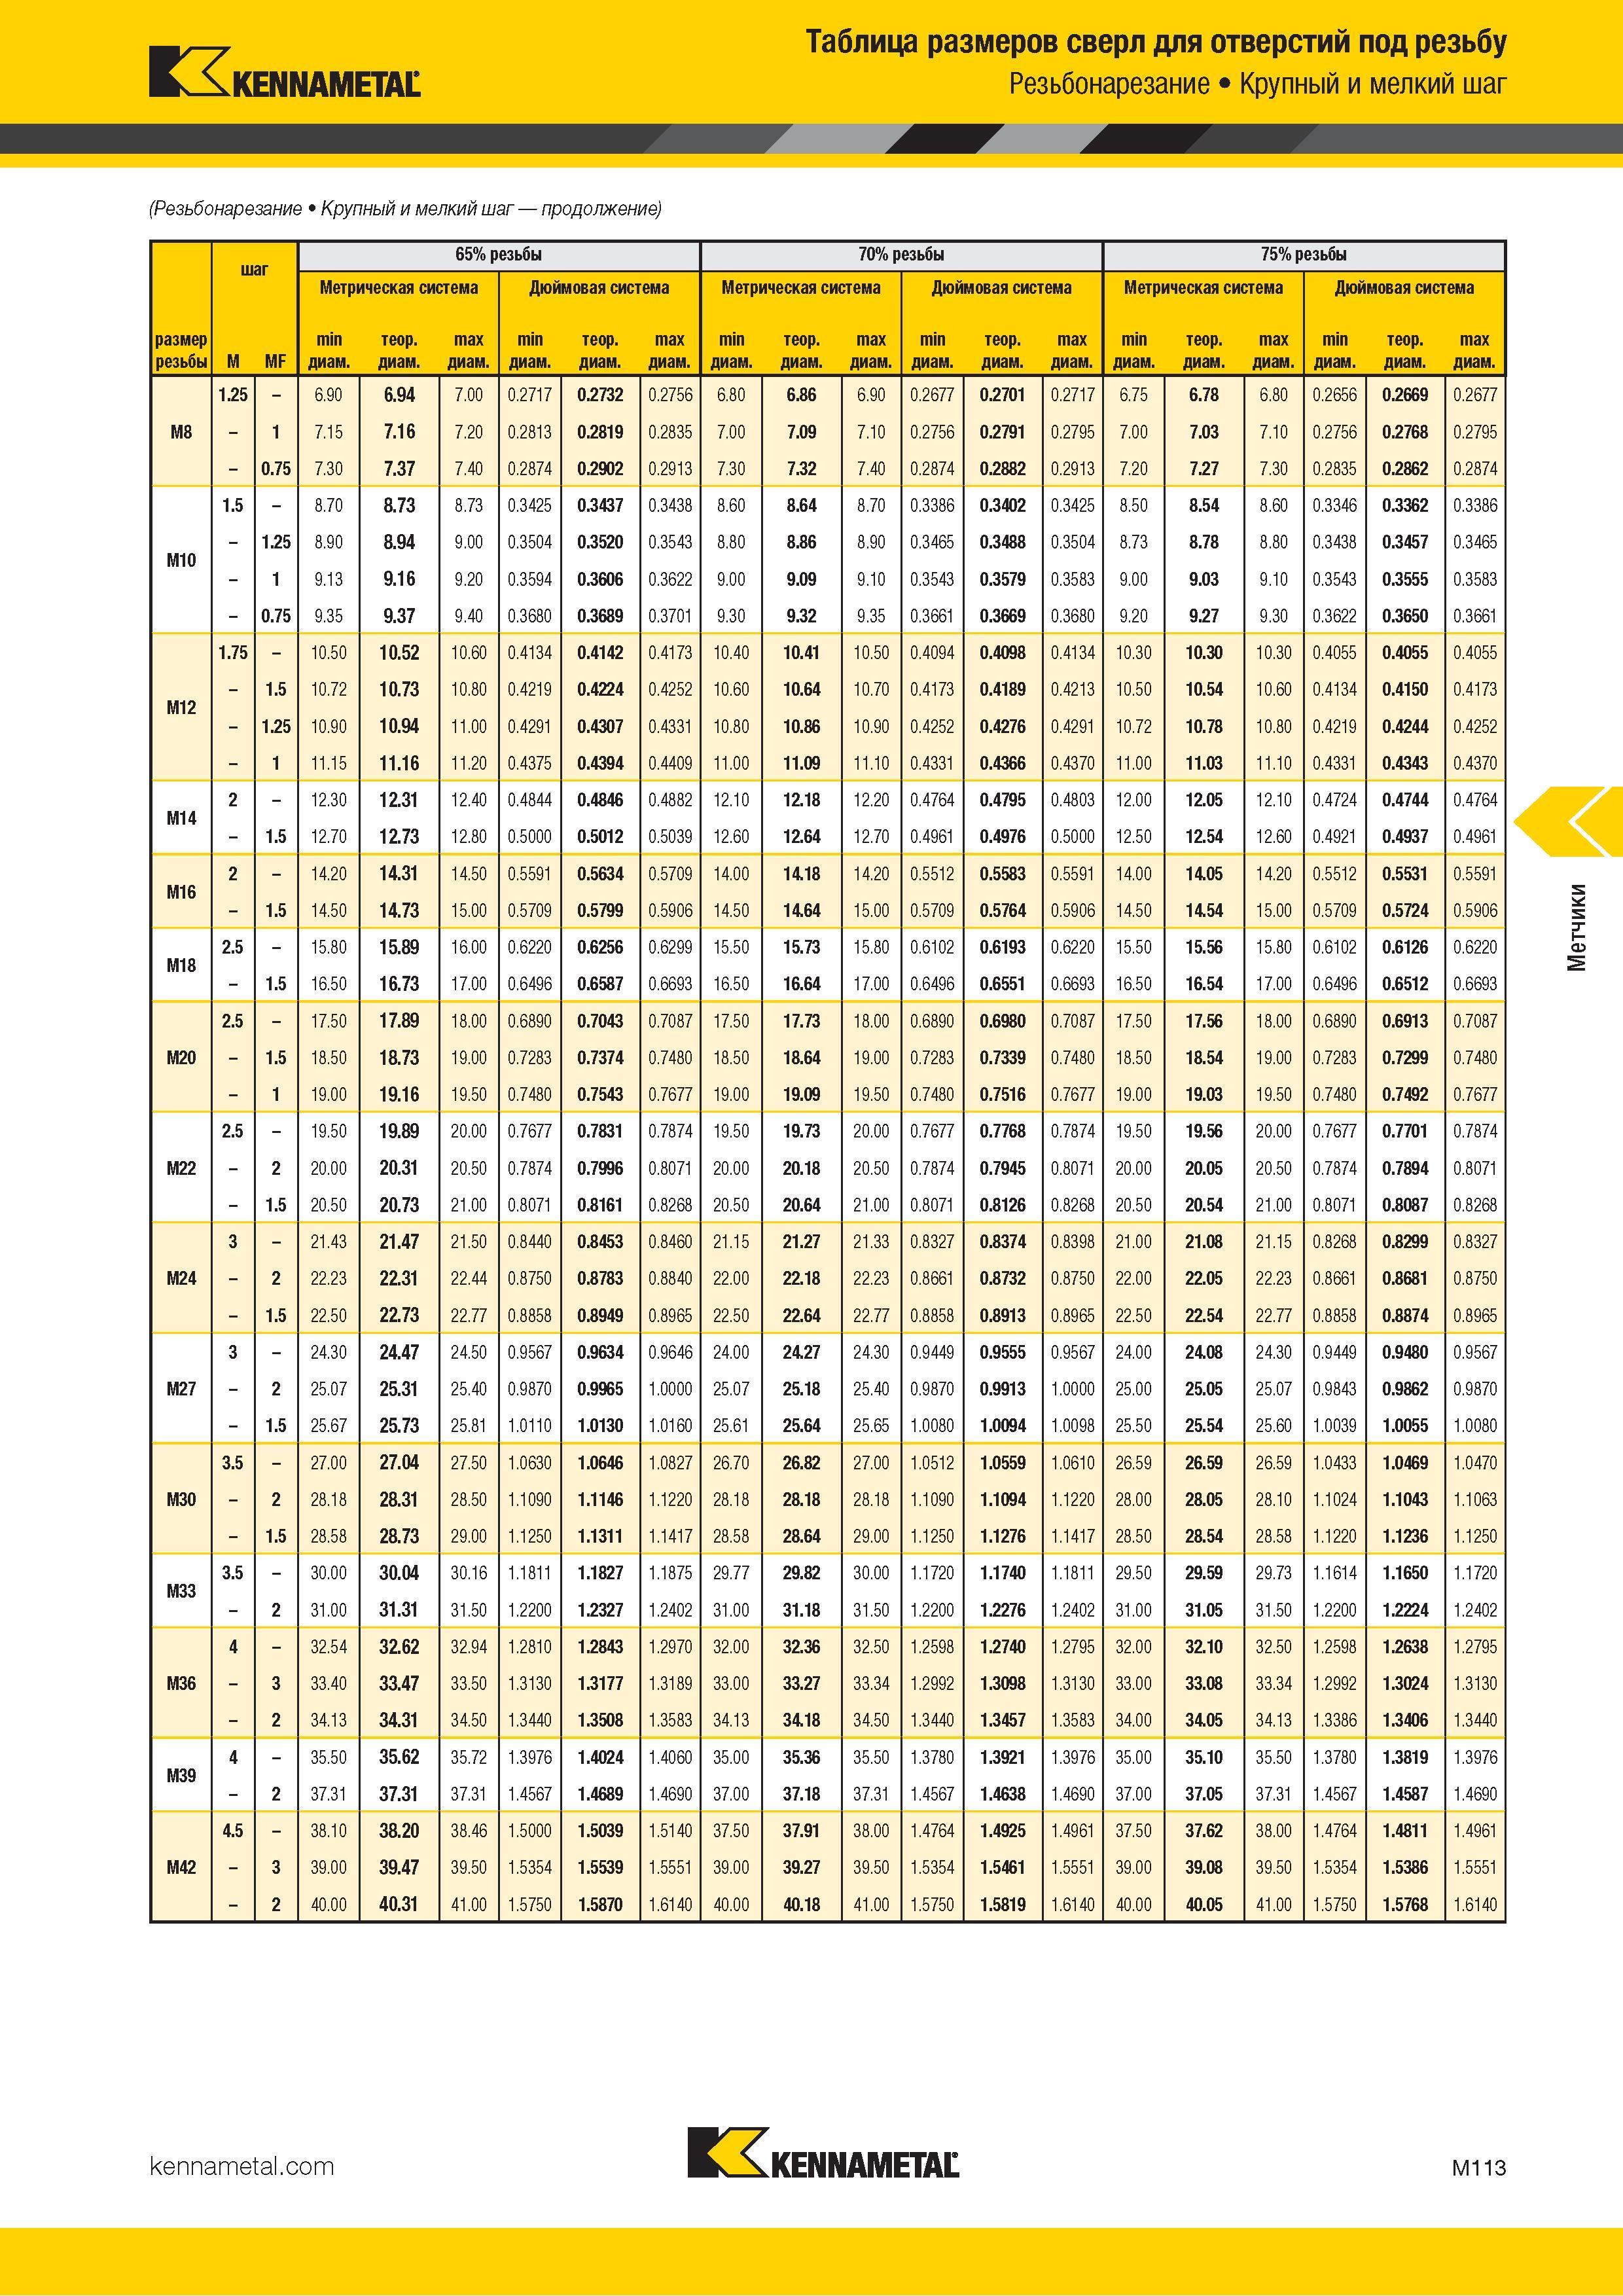 Размеры отверстий под метрическую резьбу с крупным и мелким шагом (m, mf) для нарезания метчиками общего применения справочная таблица каталог iscar 2020 пластины фрезы сверла оснастка стр. 802 0806 l